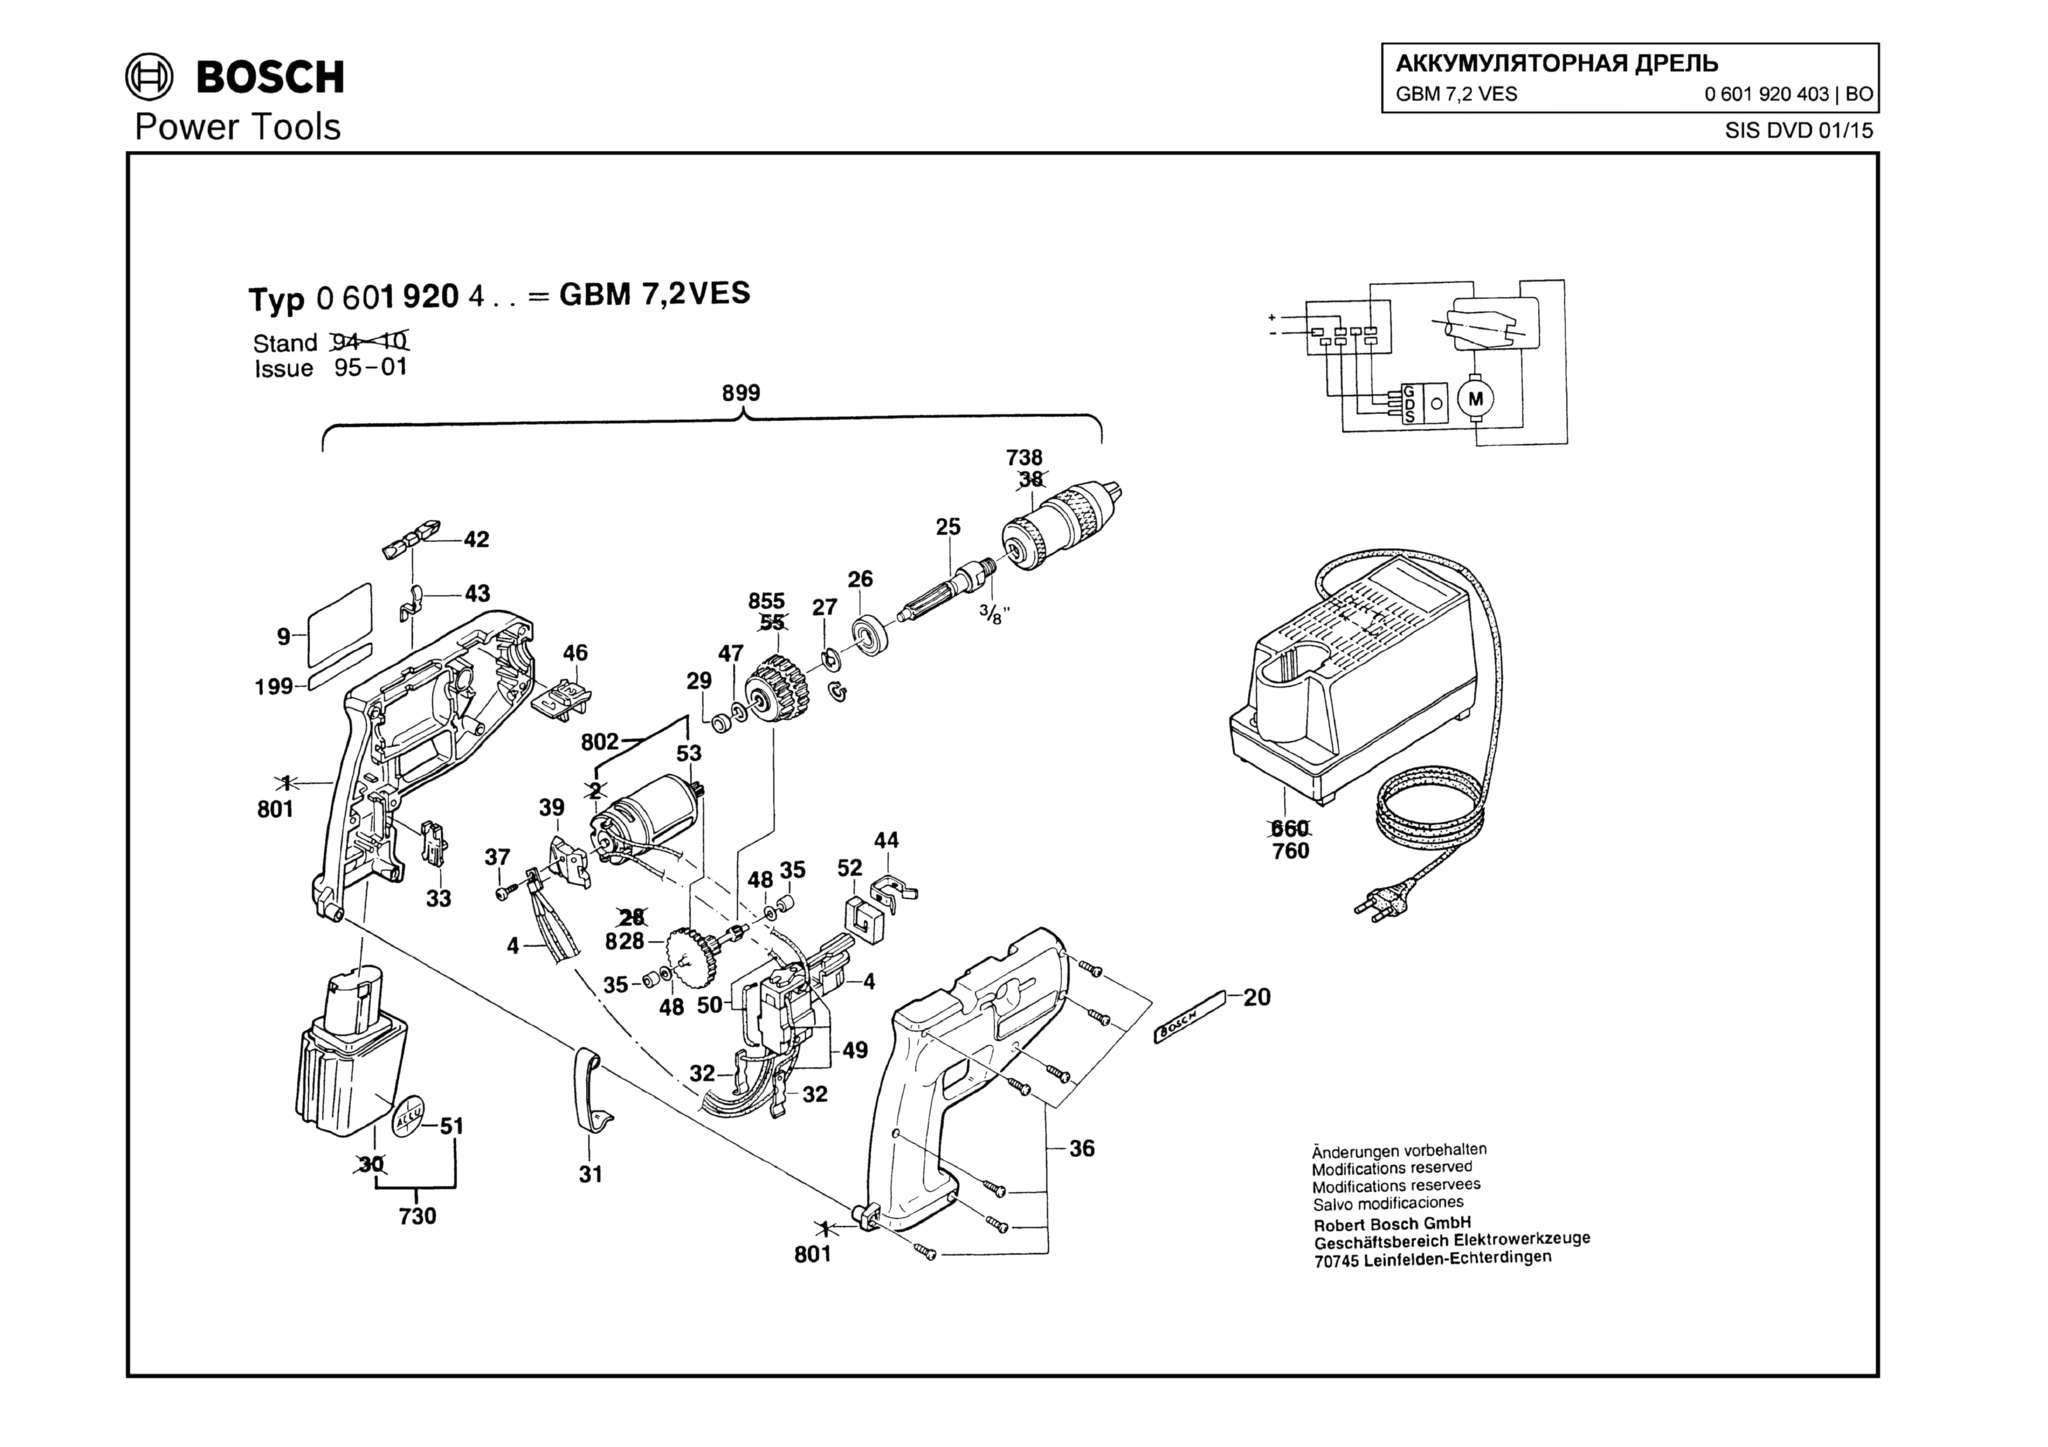 Запчасти, схема и деталировка Bosch GBM 7,2 VES (ТИП 0601920403)